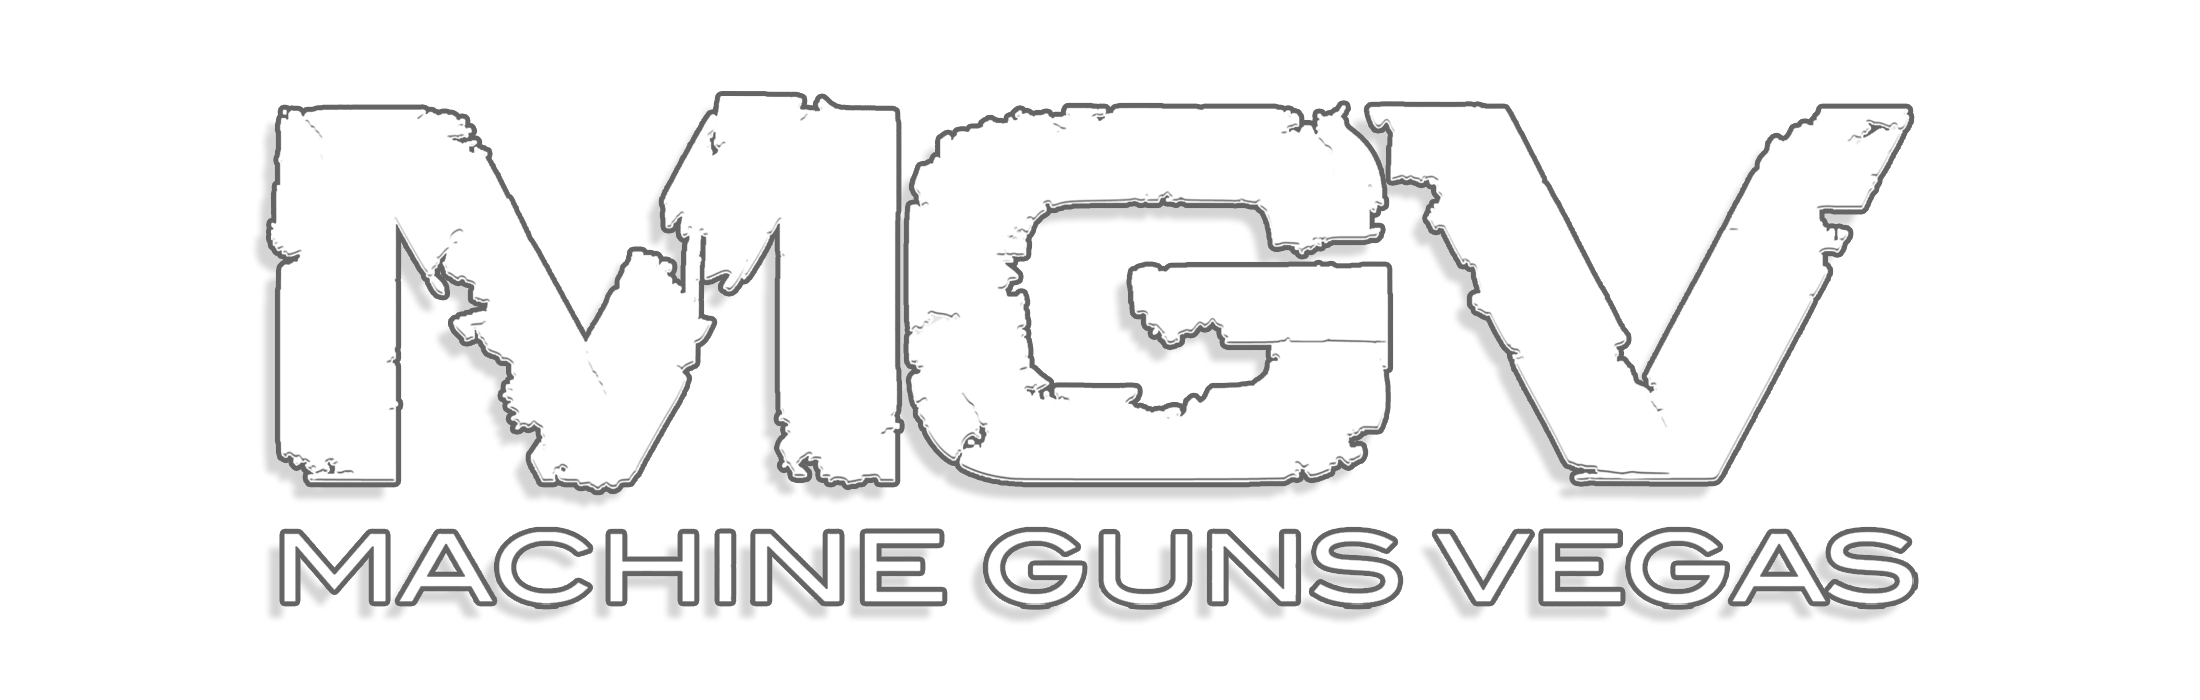 Machine Gun Vegas logo Chris F Walker